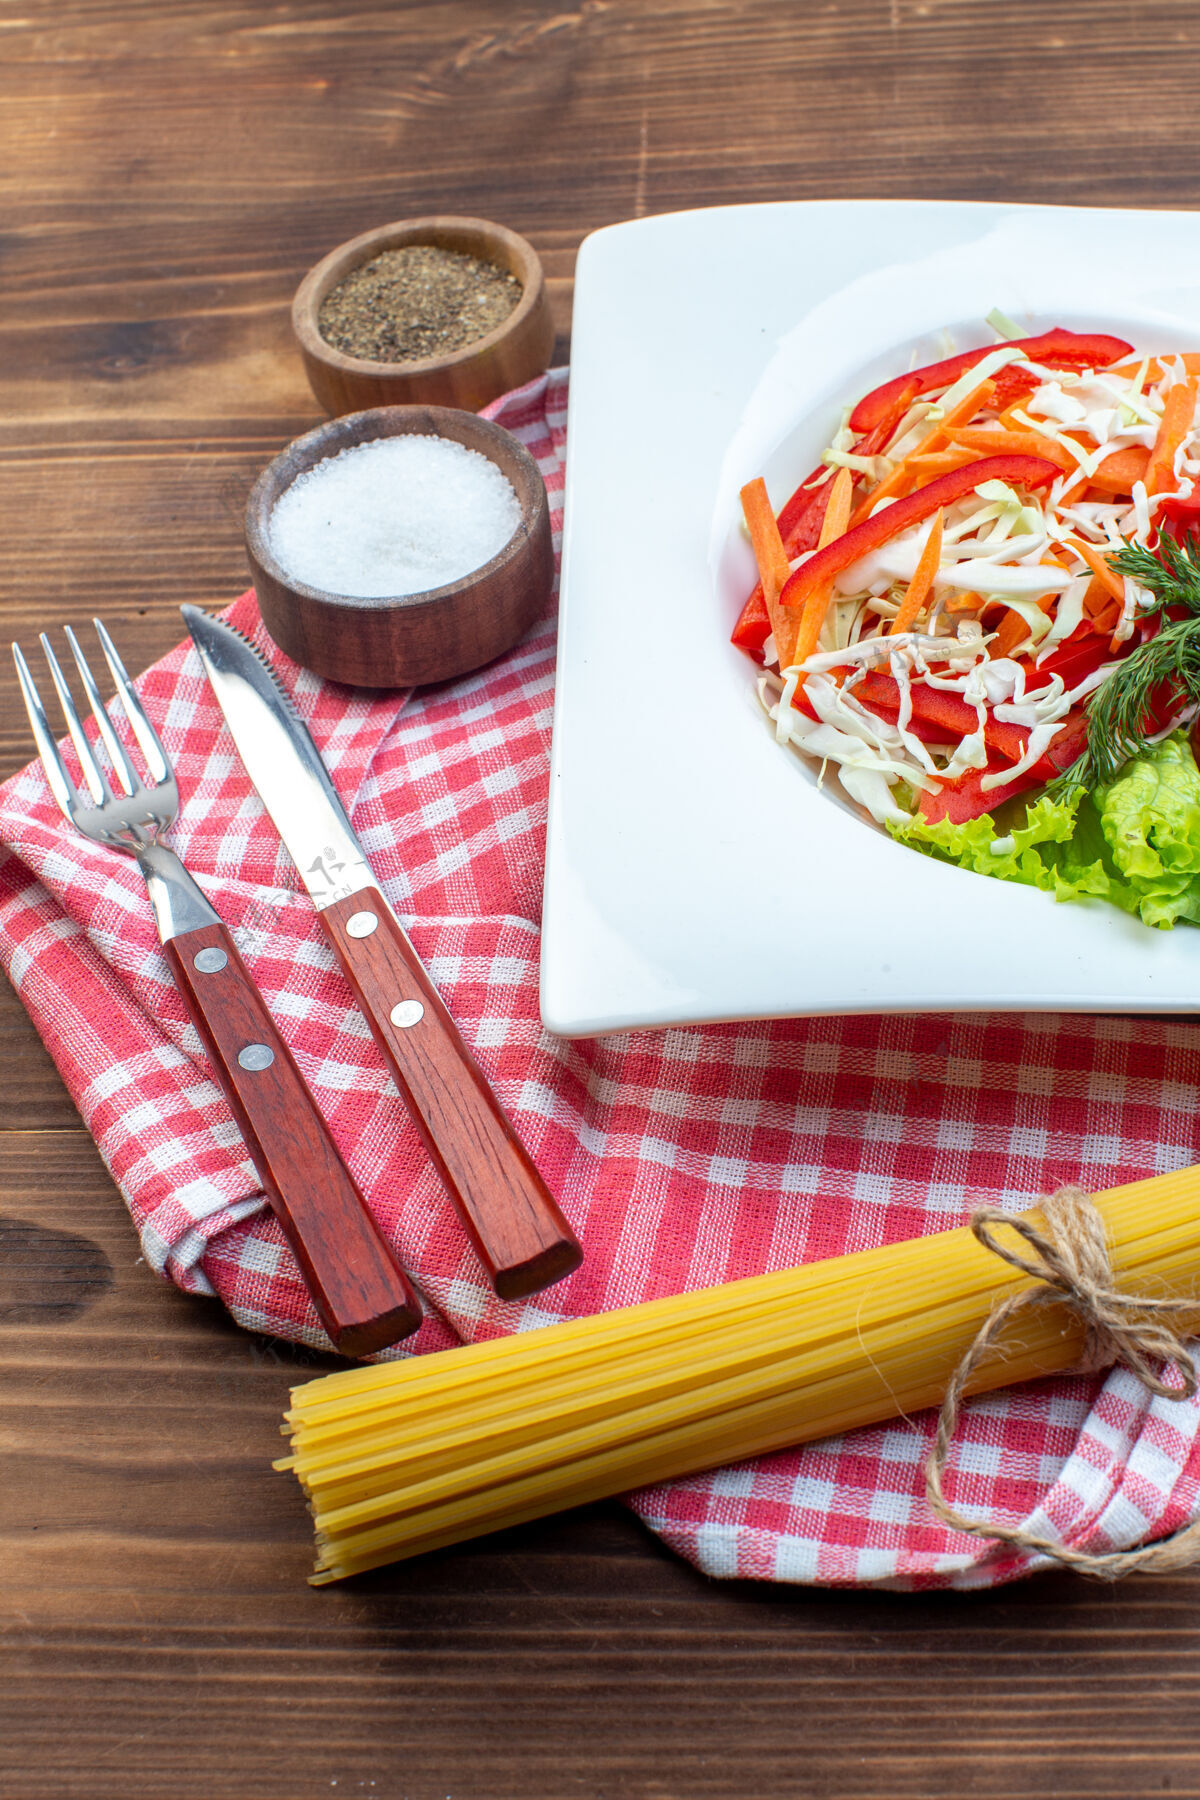 午餐前视图蔬菜沙拉与调味品和面食在棕色表面前面餐面食